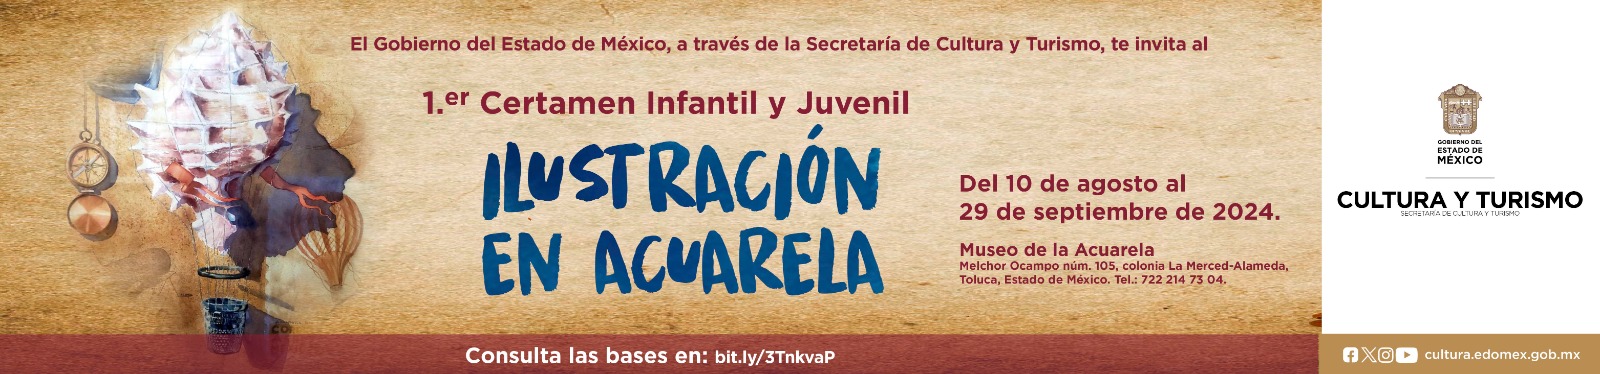 Certamen Infantil y Juvenil Ilustración en Acuarela